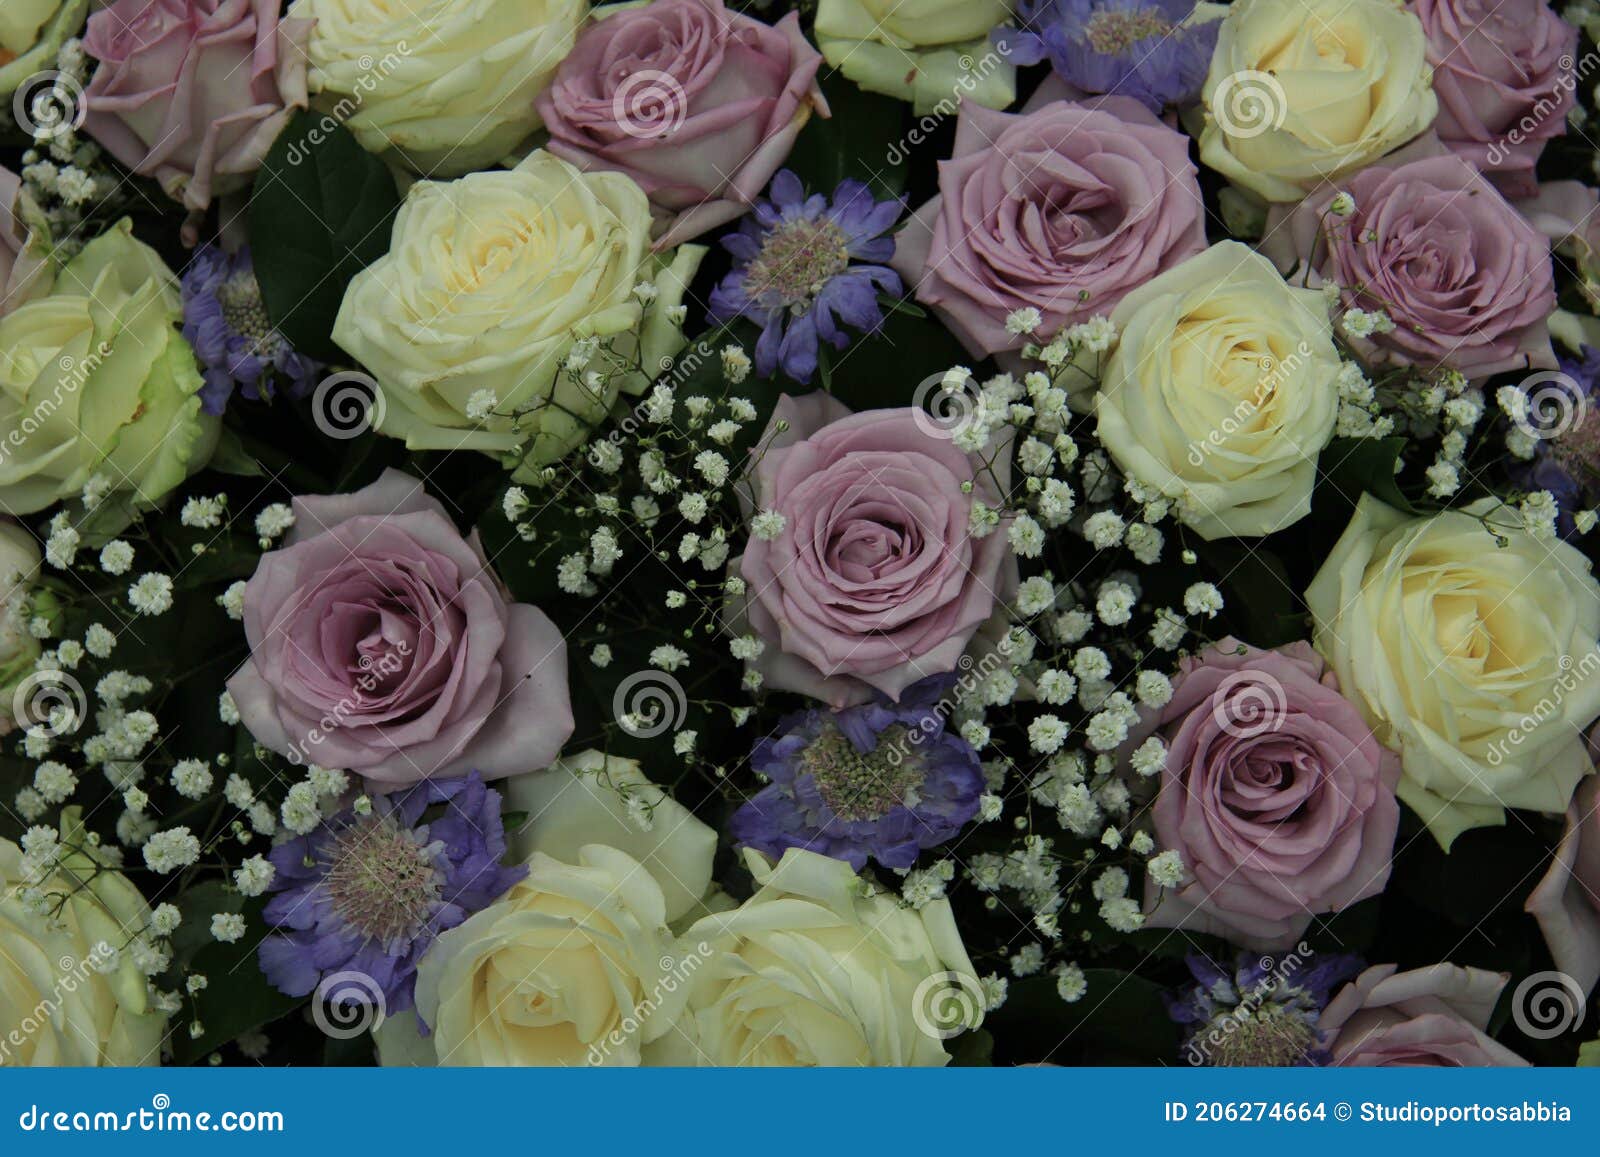 Les Roses De Mariage Mauve Et Blanc Photo stock - Image du flore, fleurs:  206274664